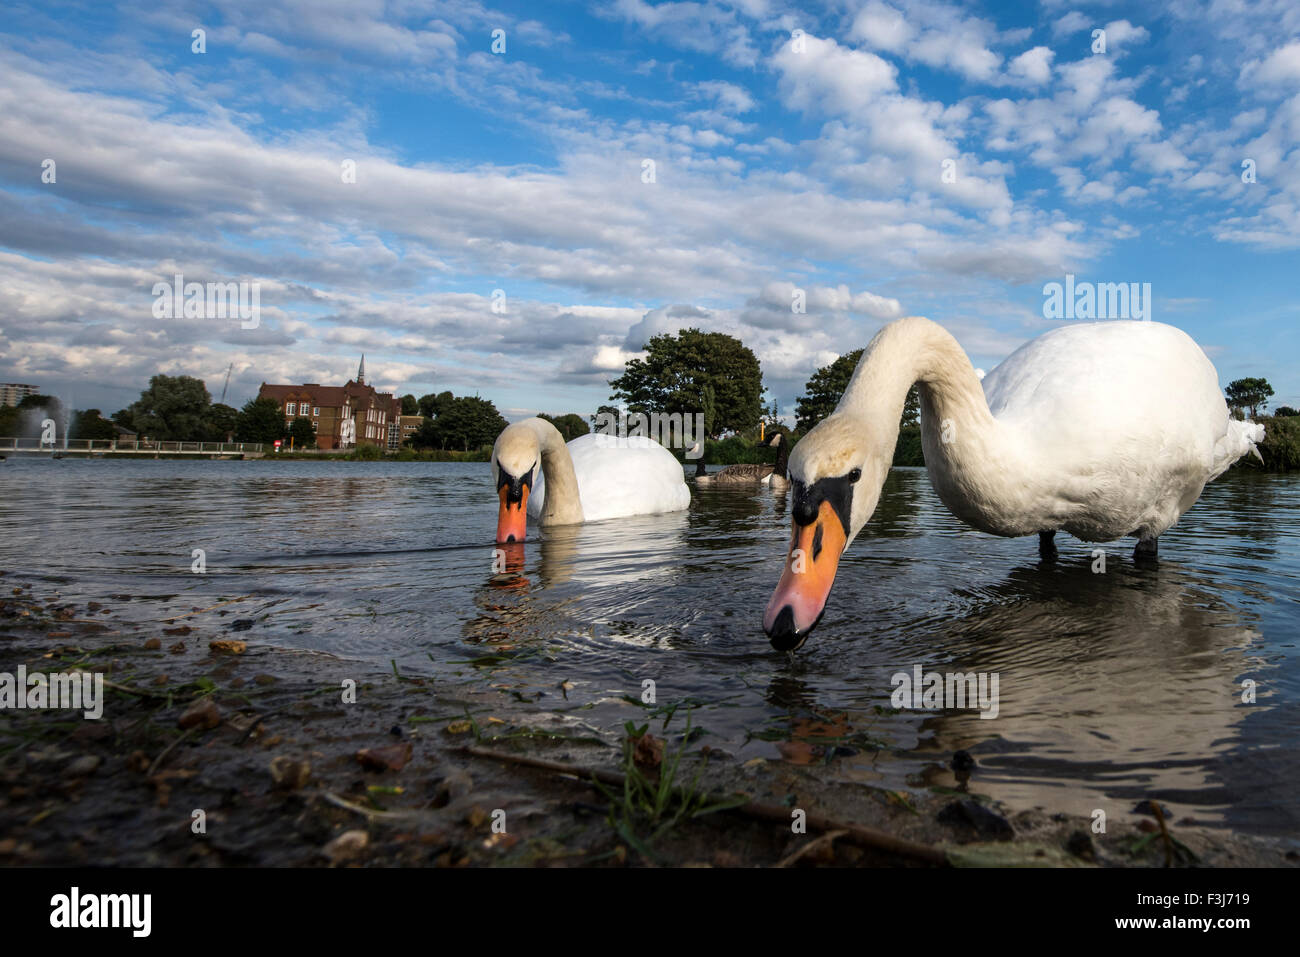 Le Cygne tuberculé (Cygnus olor) adultes se nourrissant dans l'eau parc Burgess, Londres, Angleterre, Grande-Bretagne, Royaume-Uni, Europe Banque D'Images